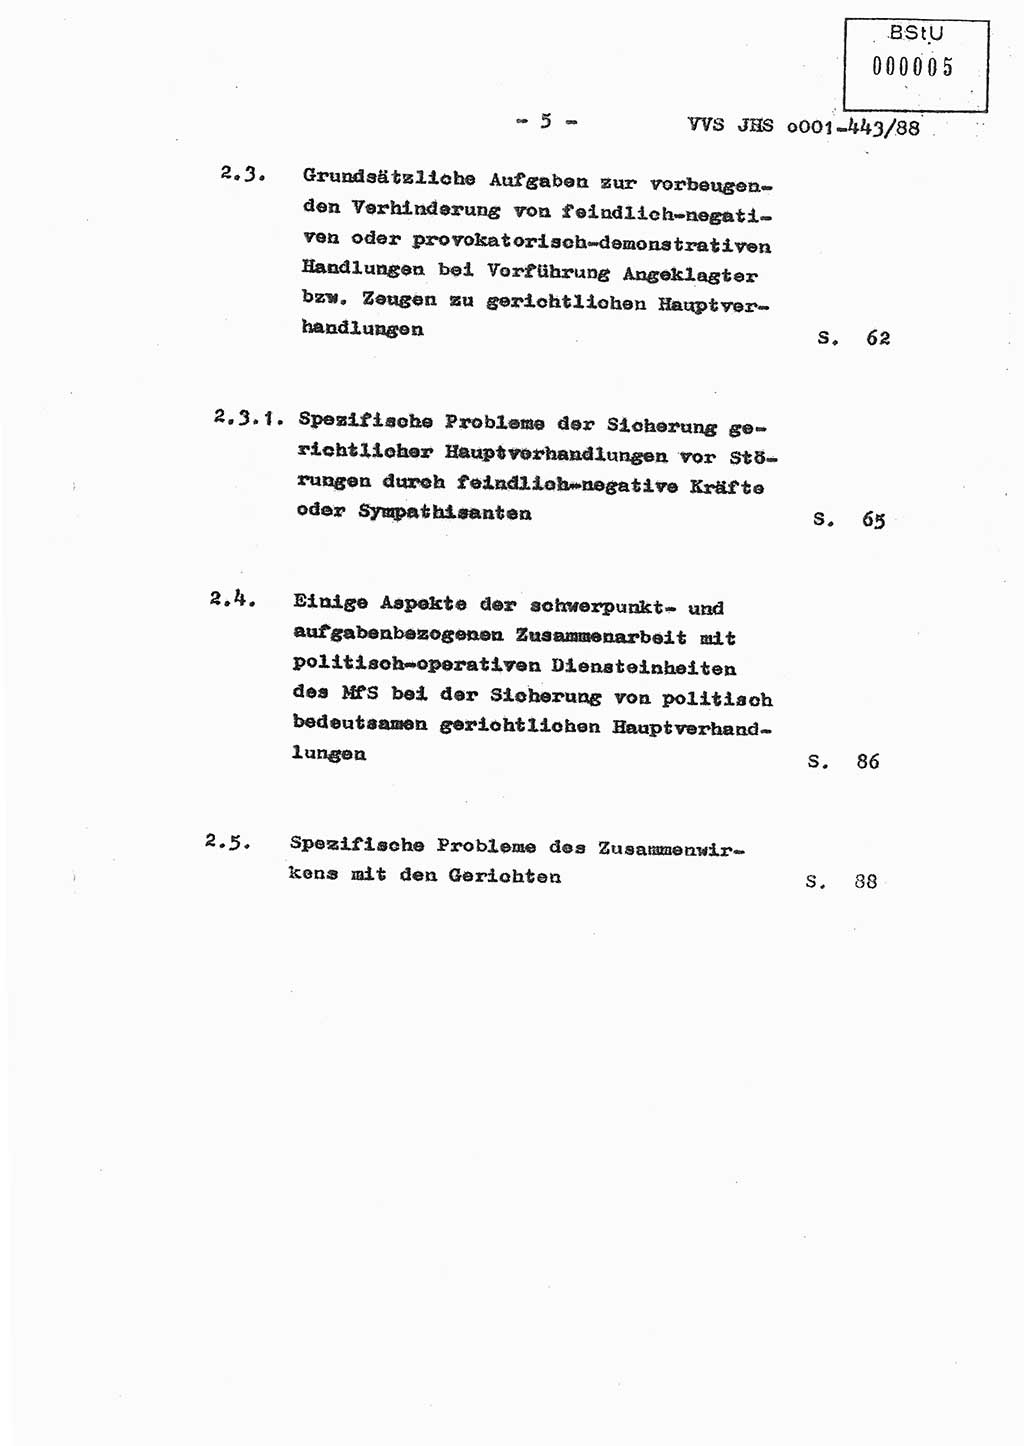 Diplomarbeit Hauptmann Michael Rast (Abt. ⅩⅣ), Major Bernd Rahaus (Abt. ⅩⅣ), Ministerium für Staatssicherheit (MfS) [Deutsche Demokratische Republik (DDR)], Juristische Hochschule (JHS), Vertrauliche Verschlußsache (VVS) o001-443/88, Potsdam 1988, Seite 5 (Dipl.-Arb. MfS DDR JHS VVS o001-443/88 1988, S. 5)